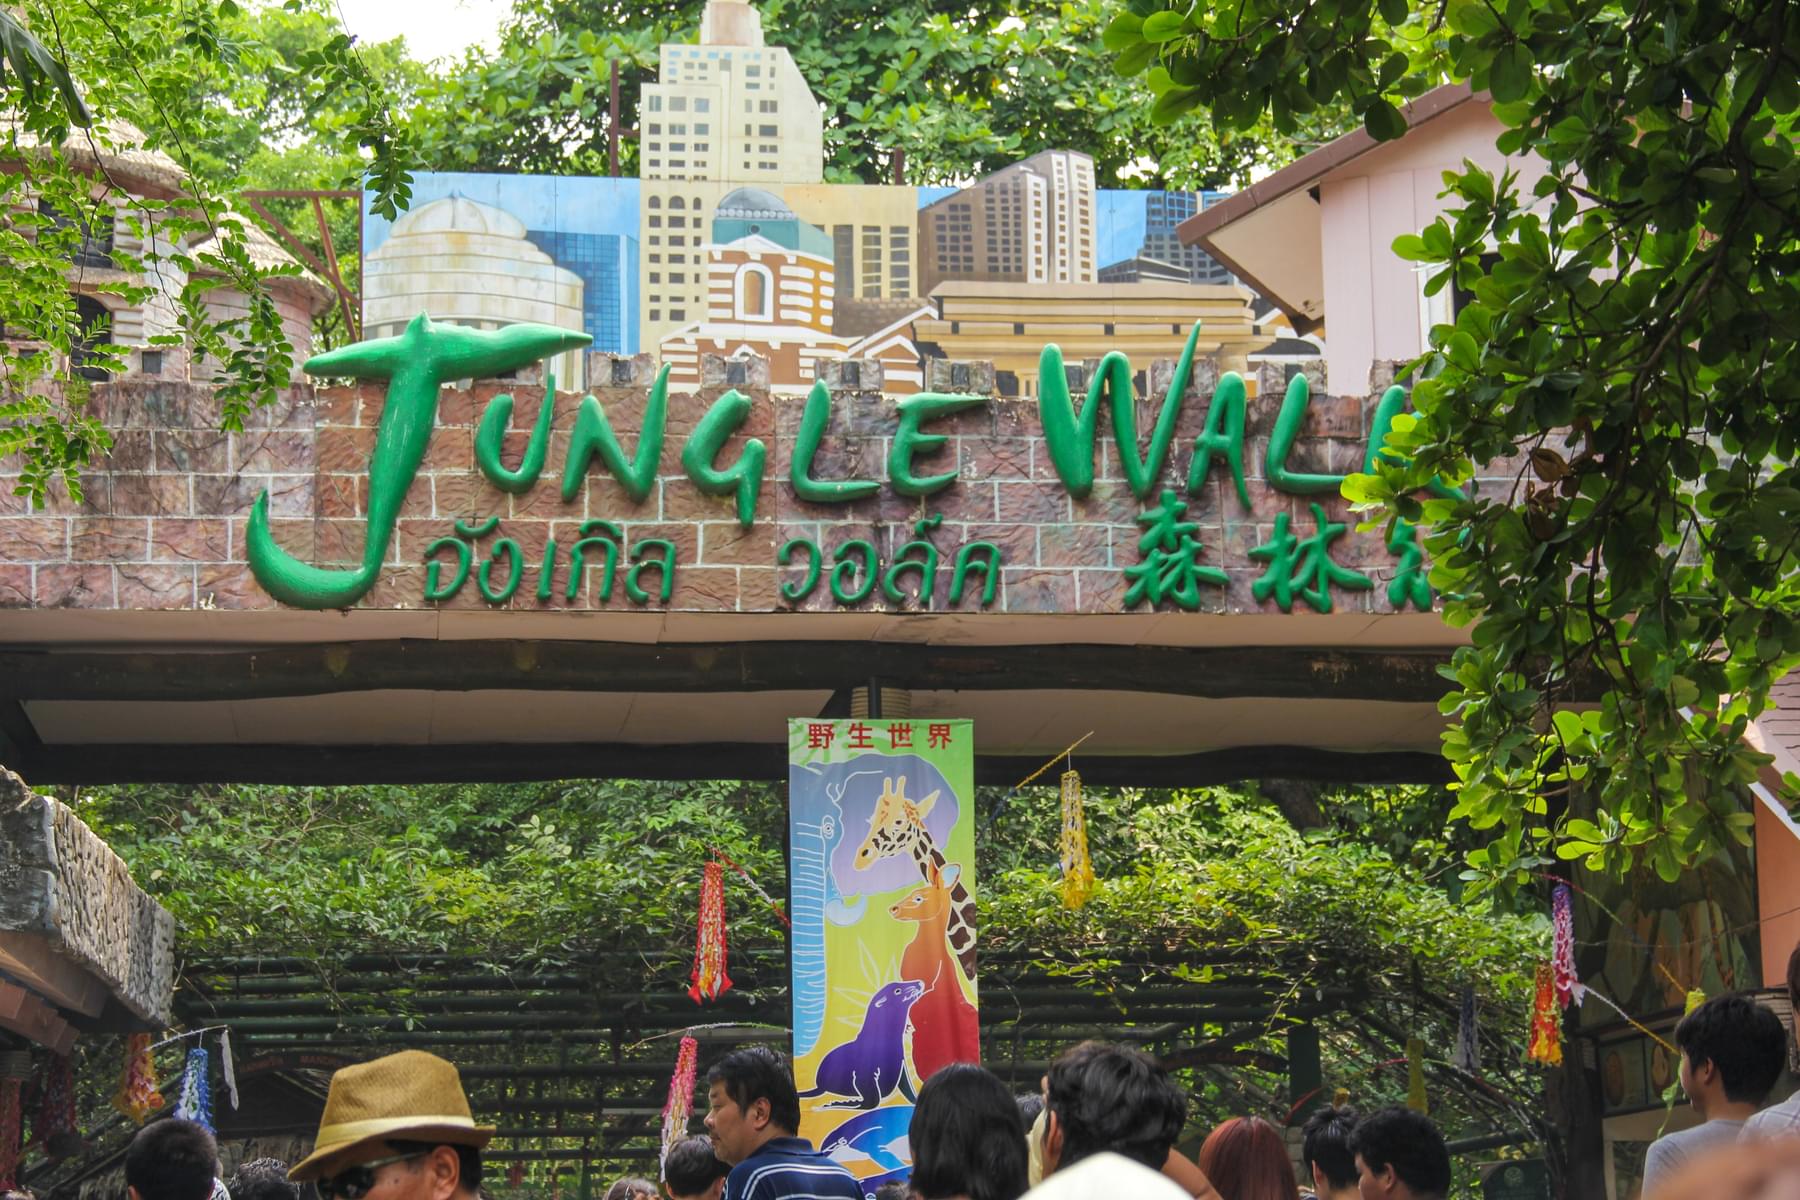 Jungle Walk 